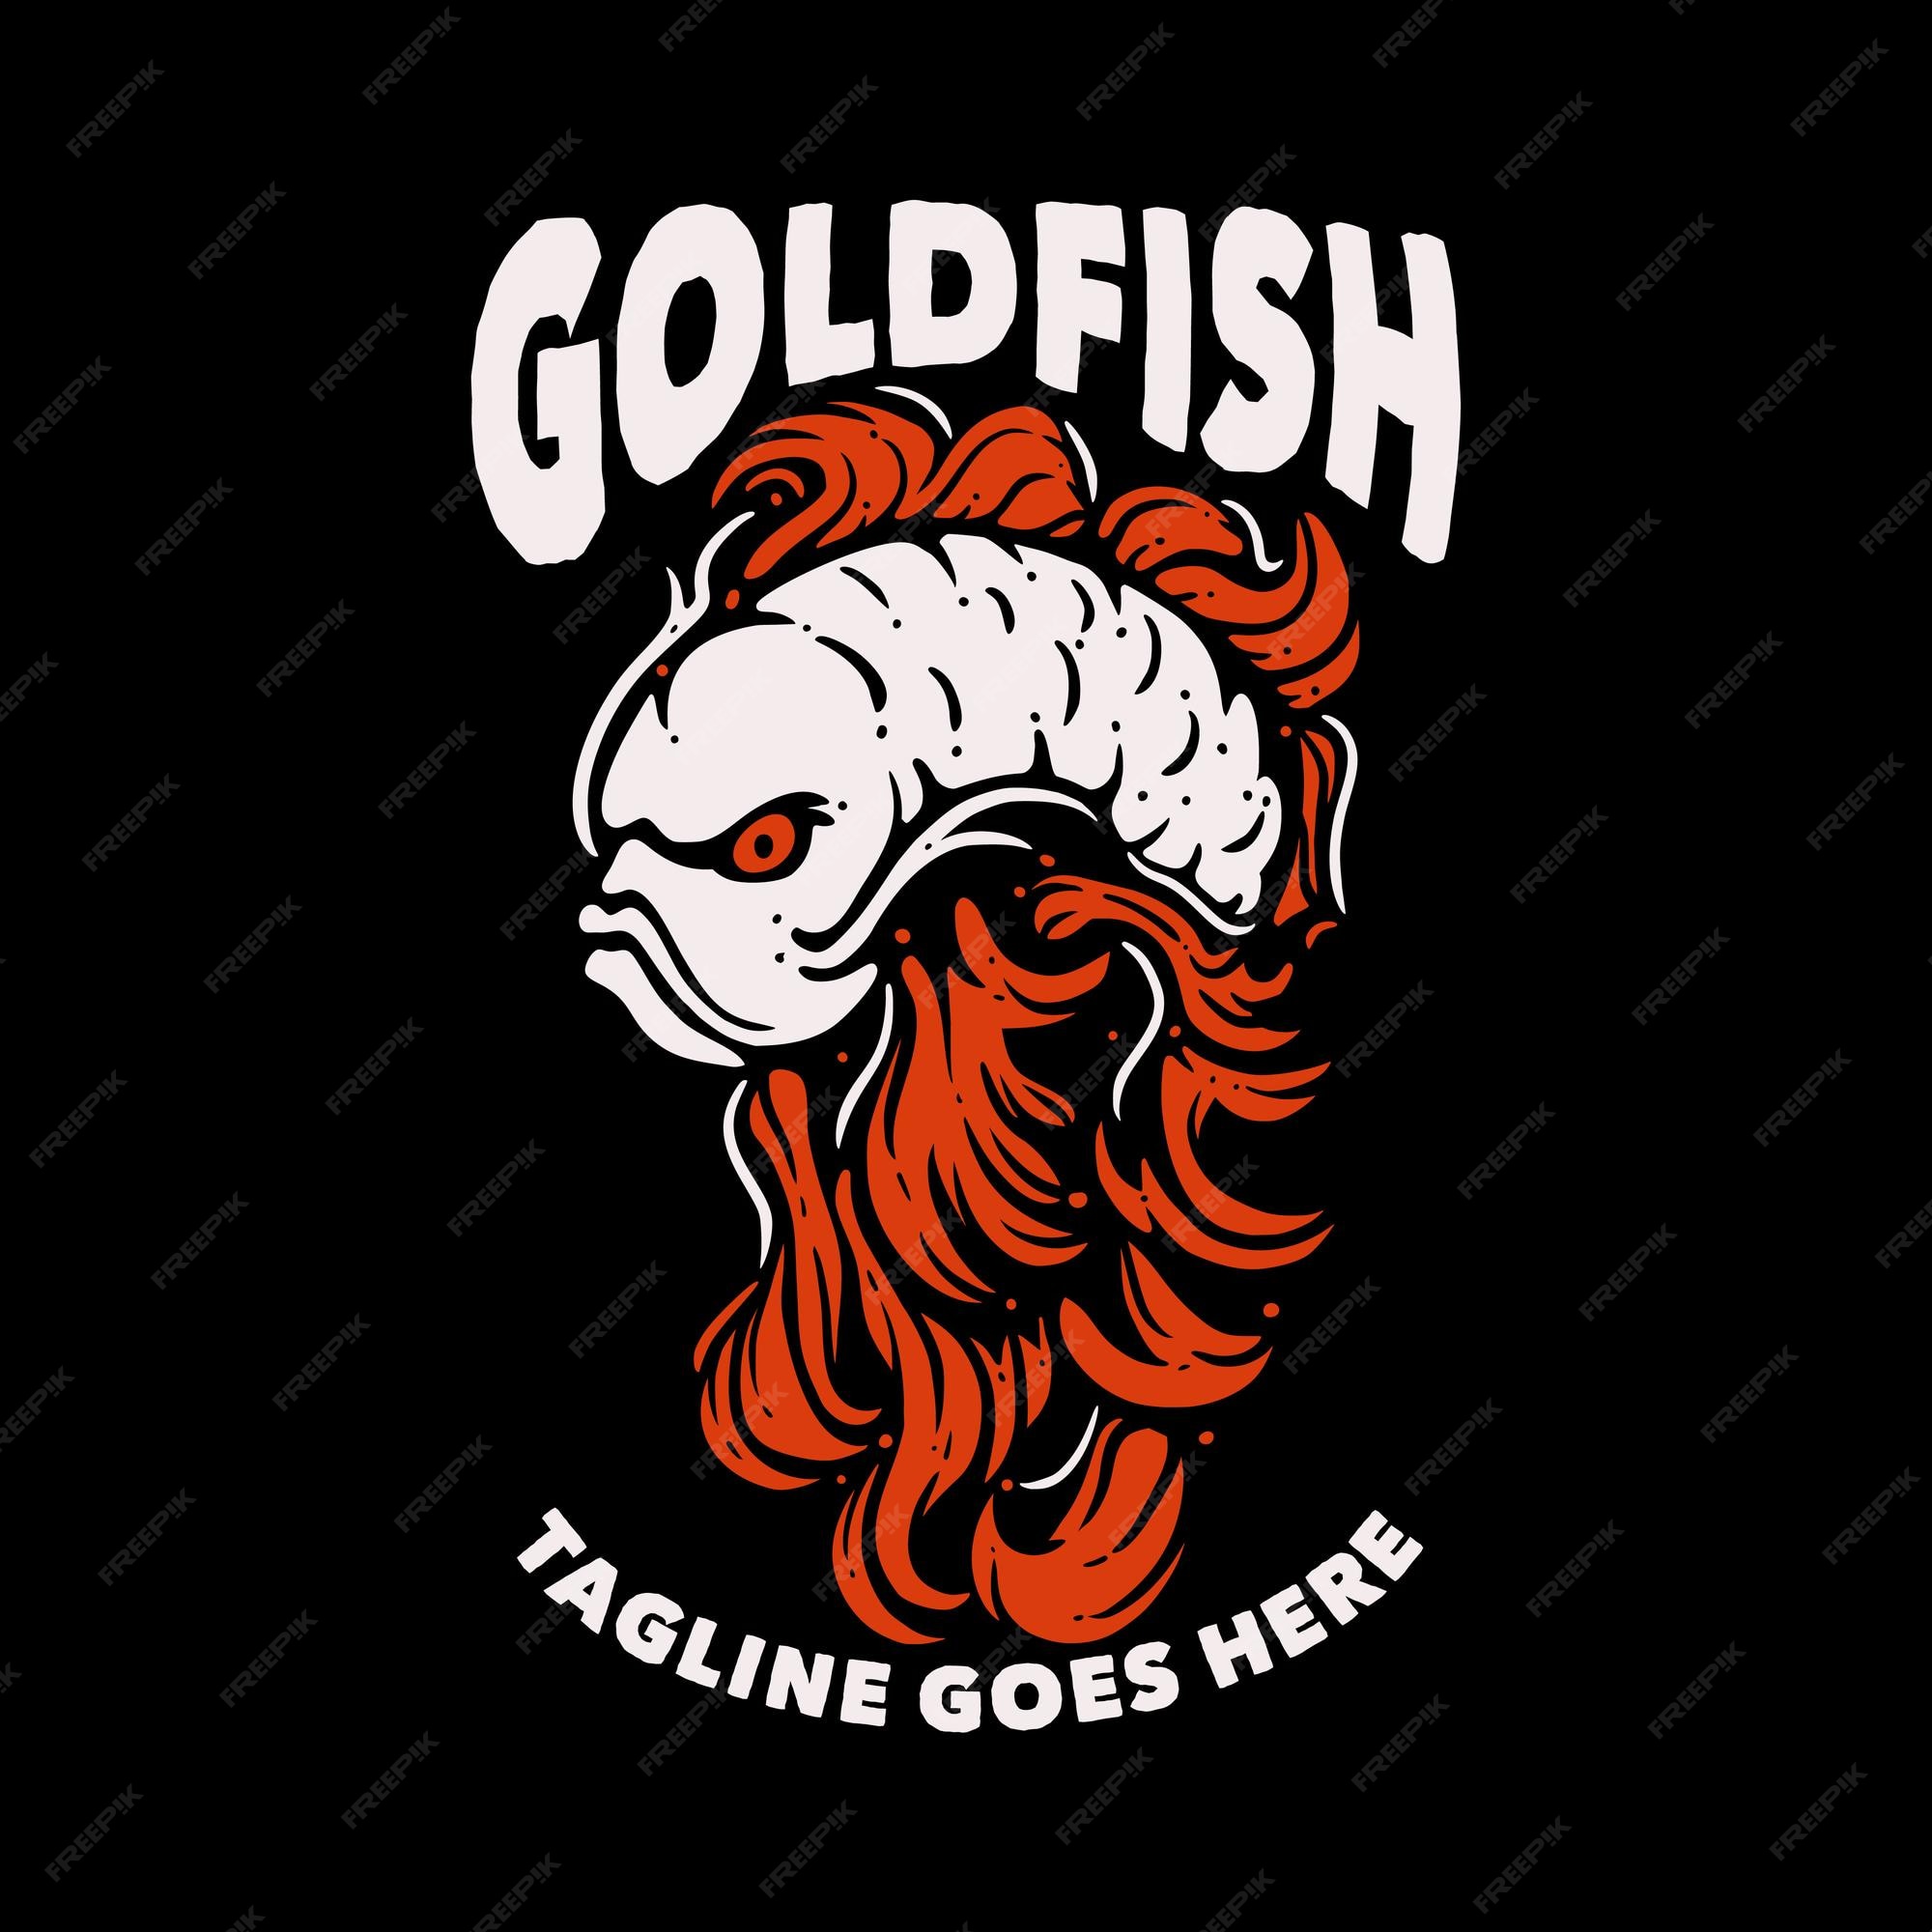 Thiết kế áo thun cá vàng - Bạn yêu thích cá vàng và muốn tìm kiếm một thiết kế áo thun tuyệt vời với chúng? Hãy ngắm nhìn bộ sưu tập thiết kế áo thun cá vàng đầy sáng tạo và cá tính của chúng tôi! Đảm bảo sẽ là một lựa chọn hoàn hảo cho bạn.